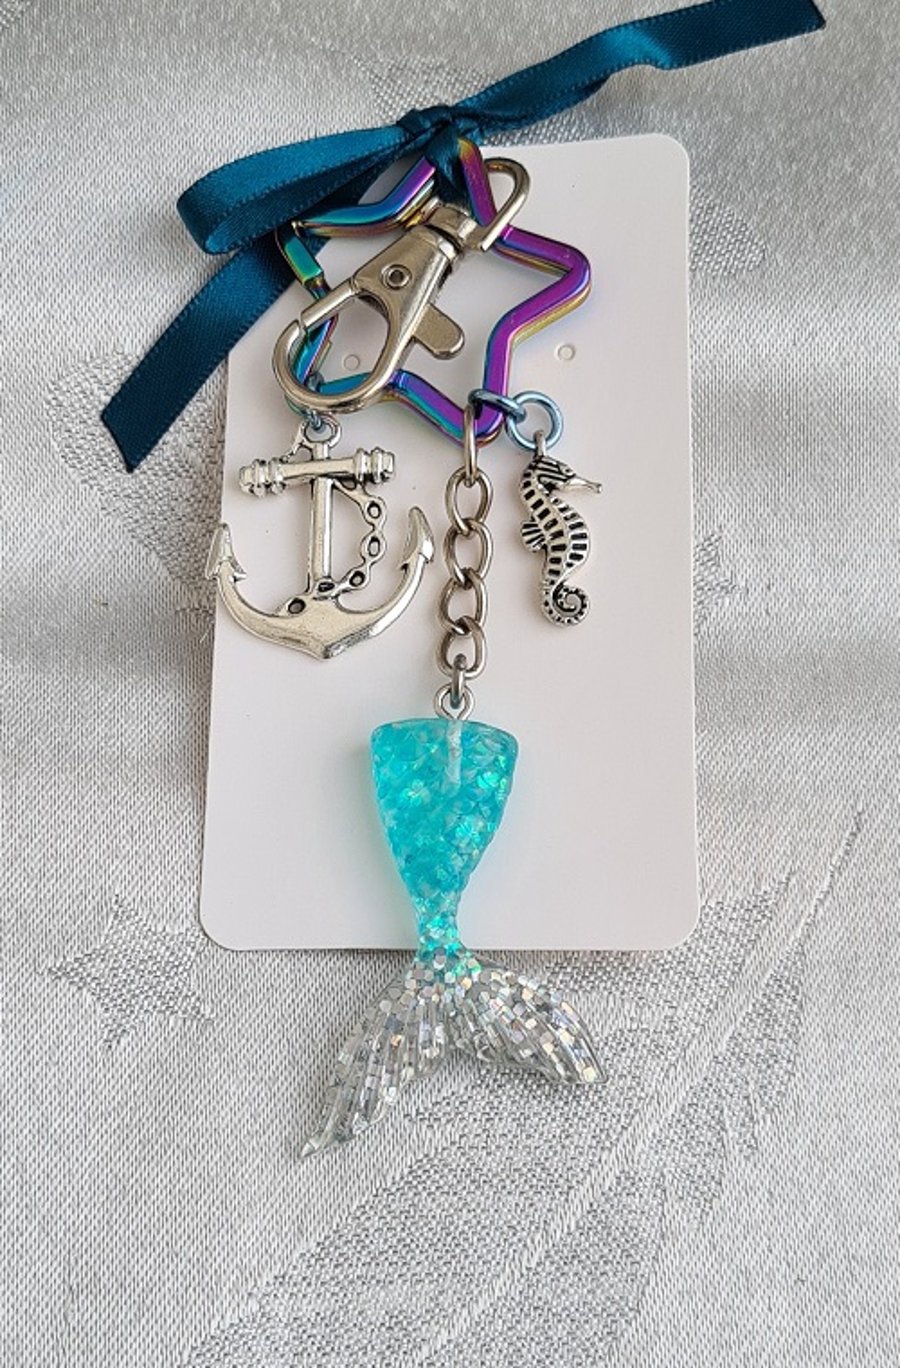 Gorgeous Blue Mermaid Tail Key Ring - Bag Charm - Key Chain.